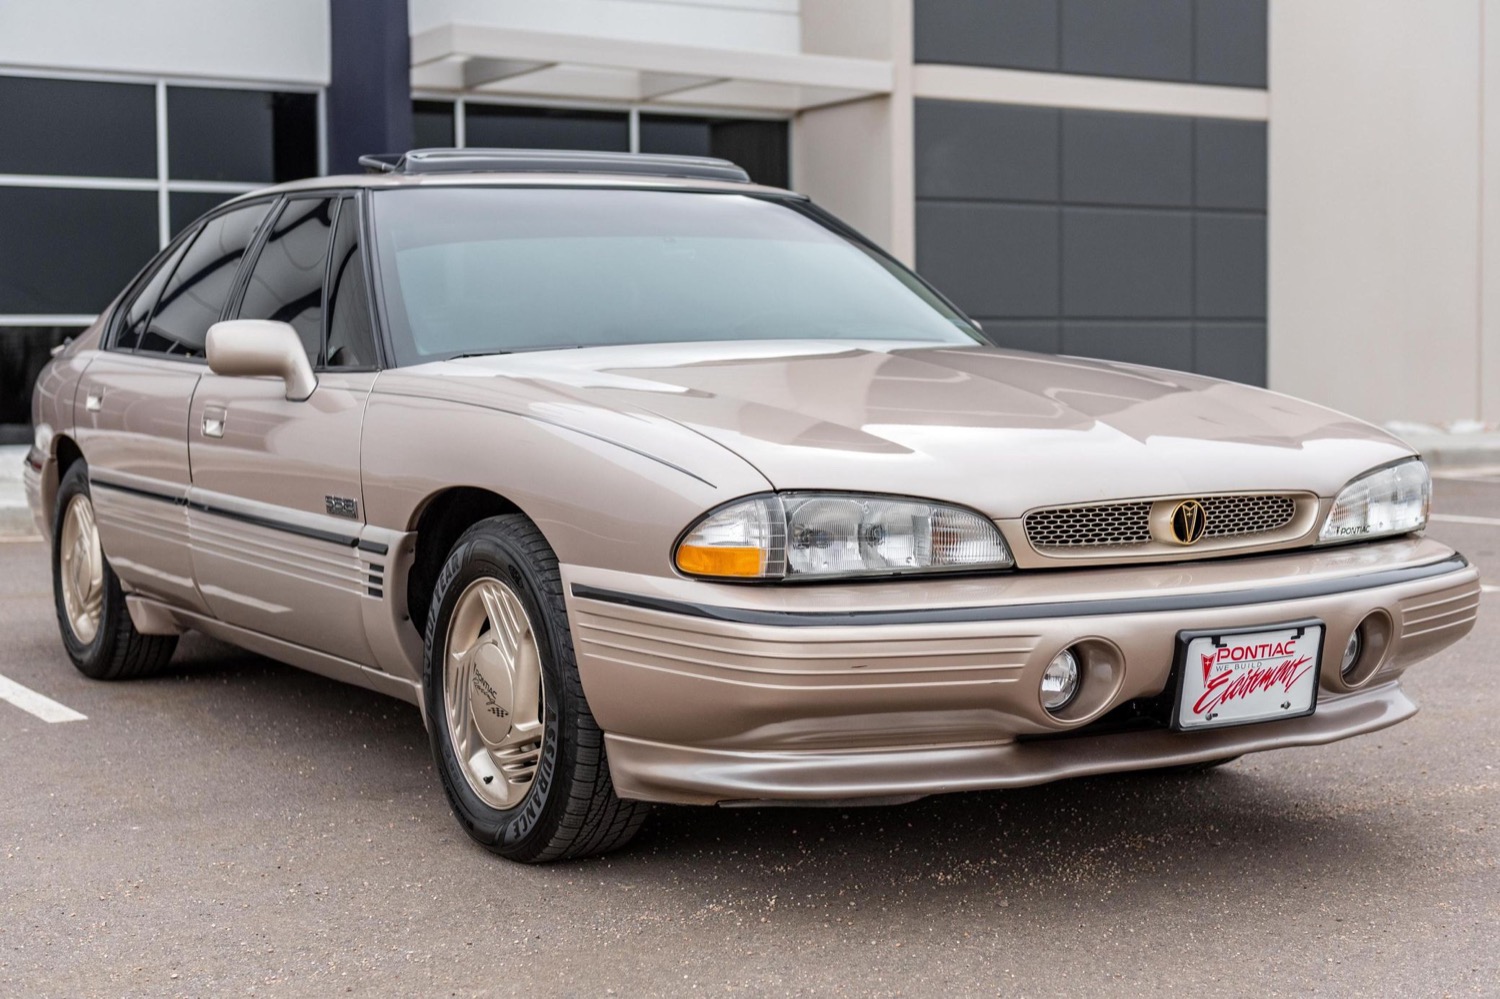 This Clean 1995 Pontiac Bonneville SSEi Is Up For Sale